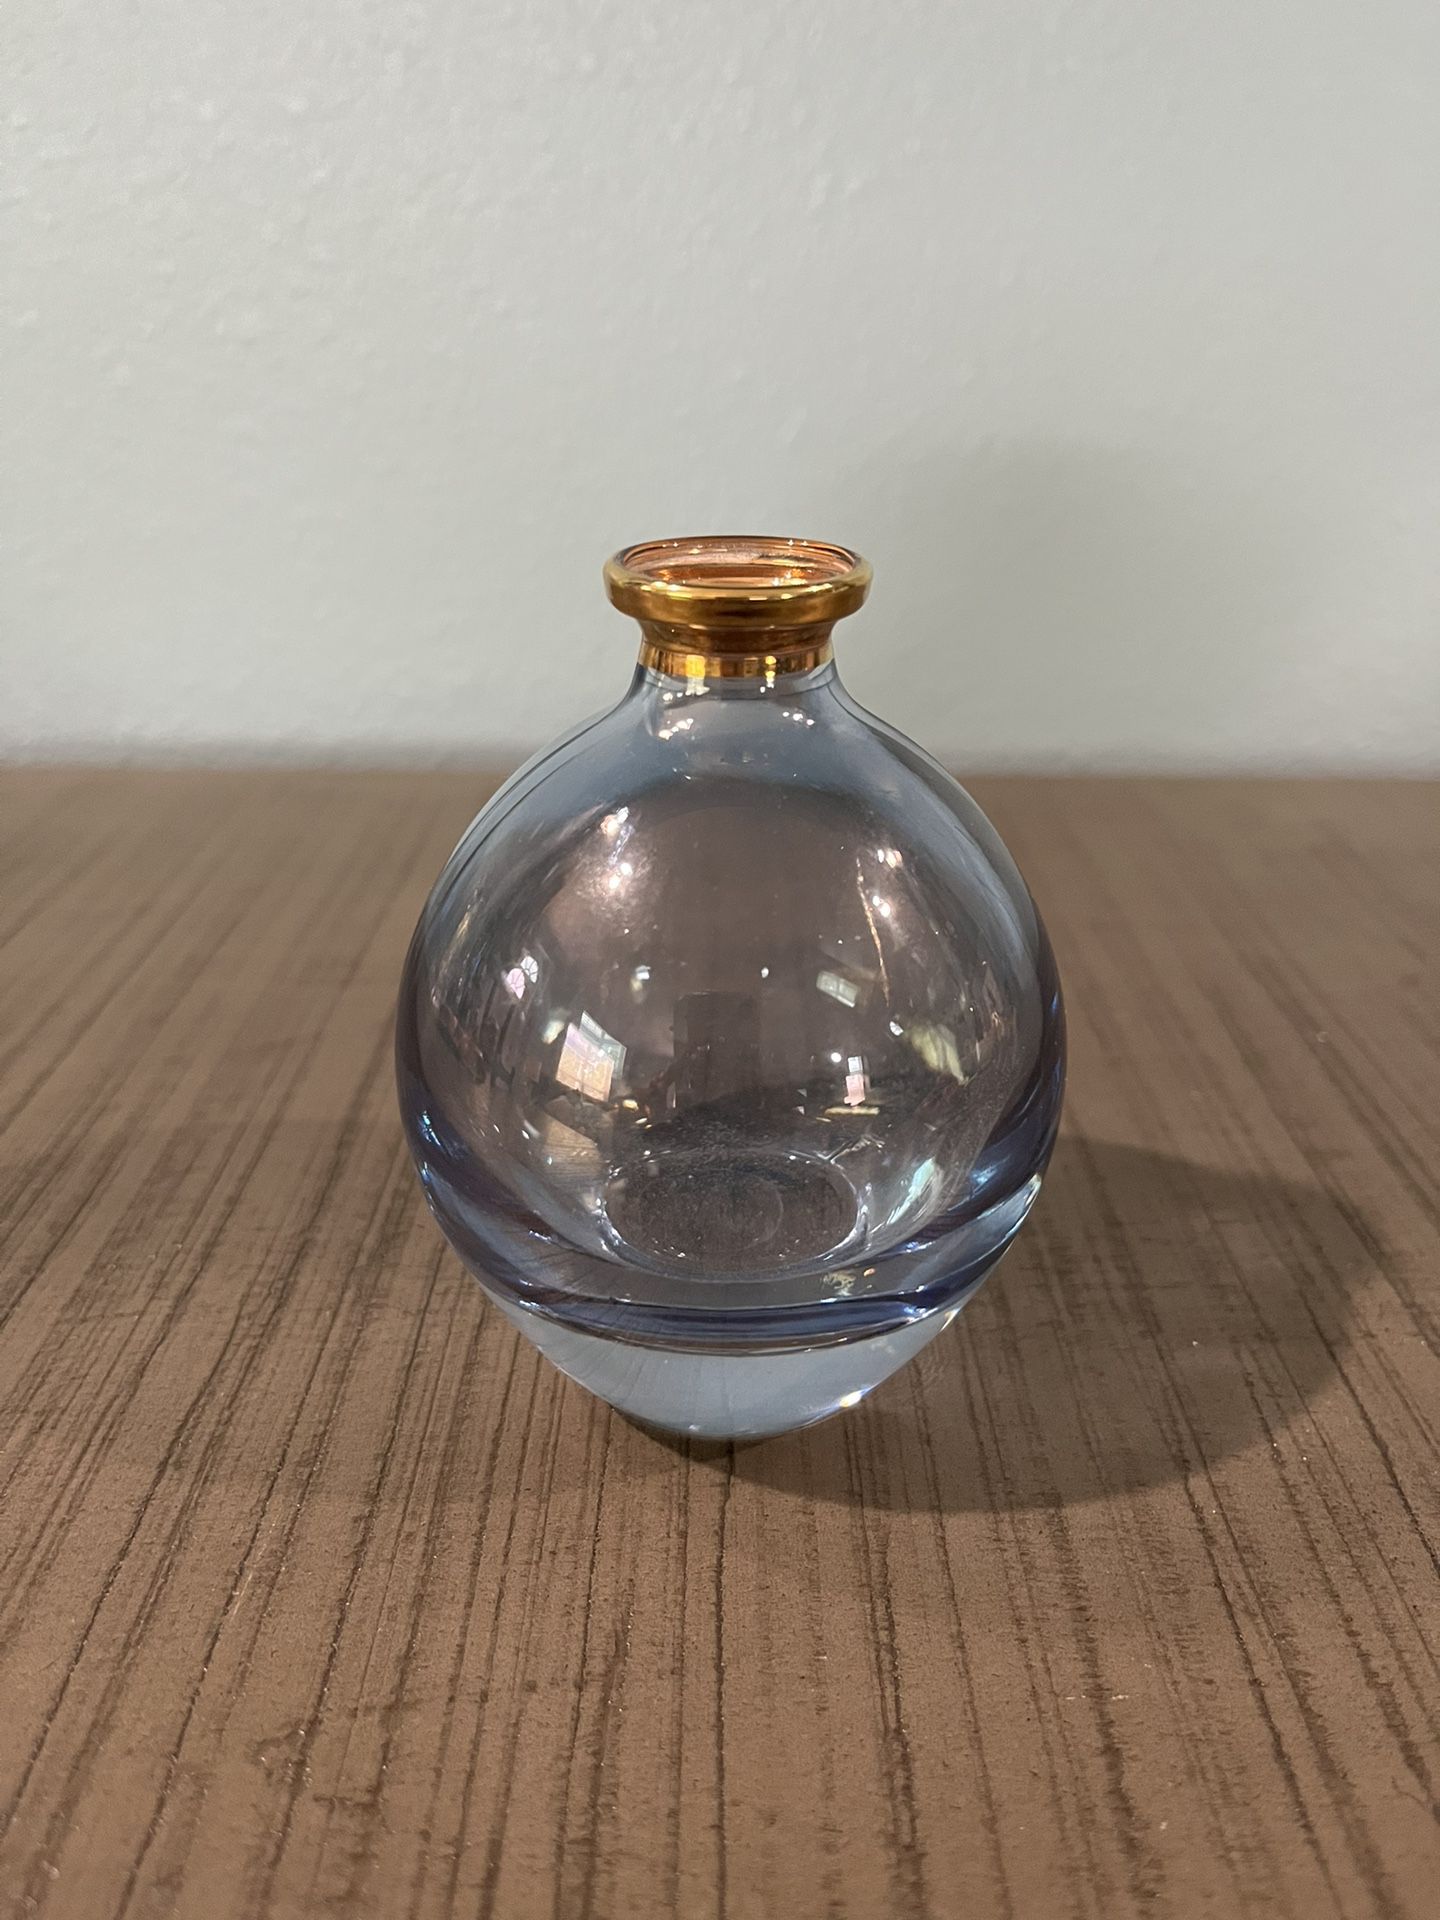 Illusions Lead Crystal Perfume Bottle